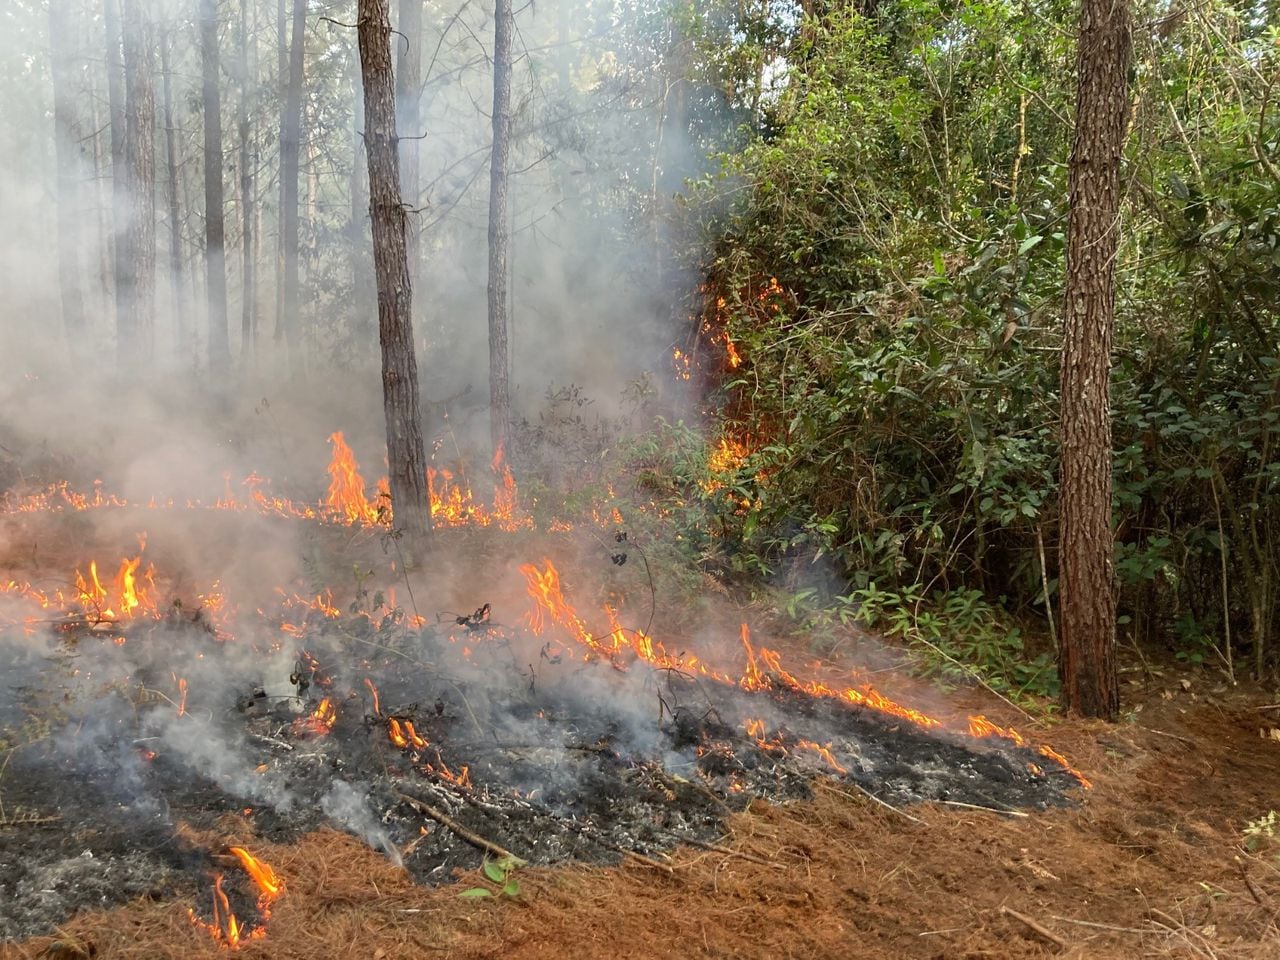 Denuncian quema de maquinaria y violencia contra trabajadores de Smurfit Kappa en Cajibío, Cauca.